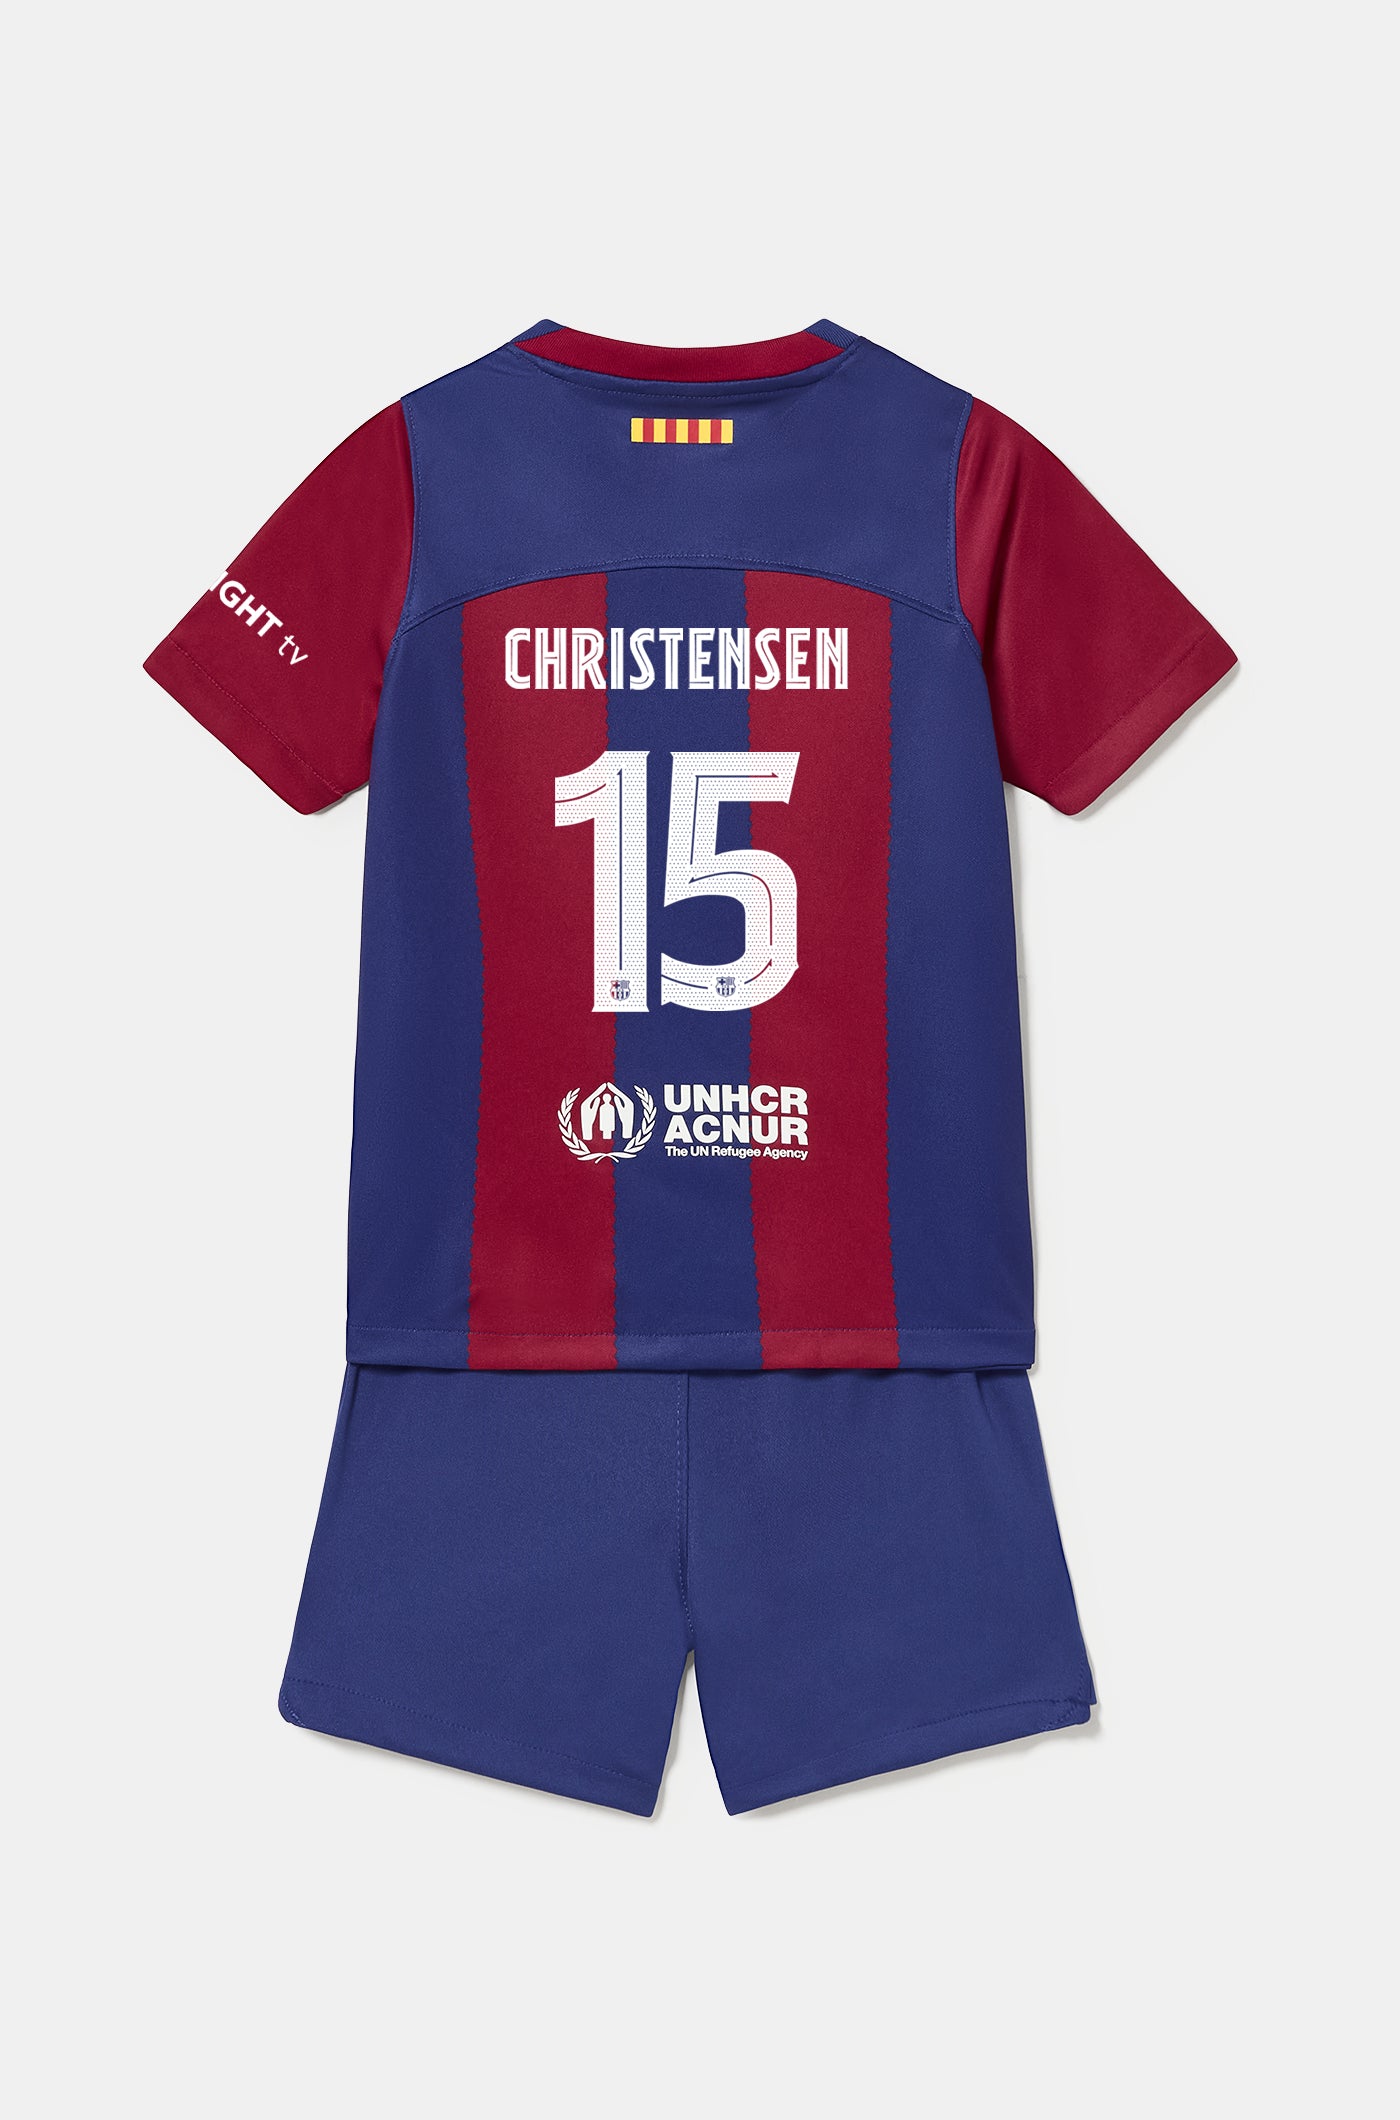 Conjunt primer equipament FC Barcelona 23/24 - Nen/a petit/a - CHRISTENSEN 